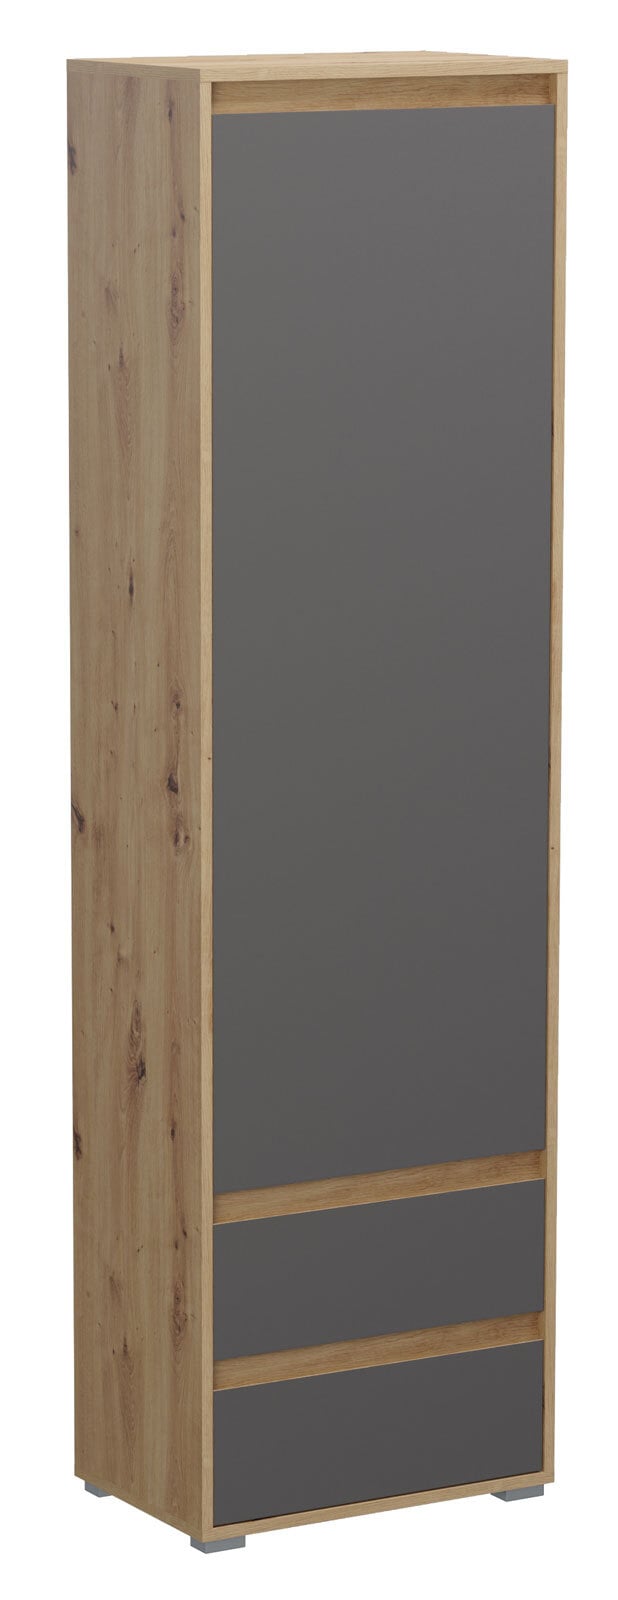 Garderobenschrank TORINO 54 x 190 cm braun/ grau